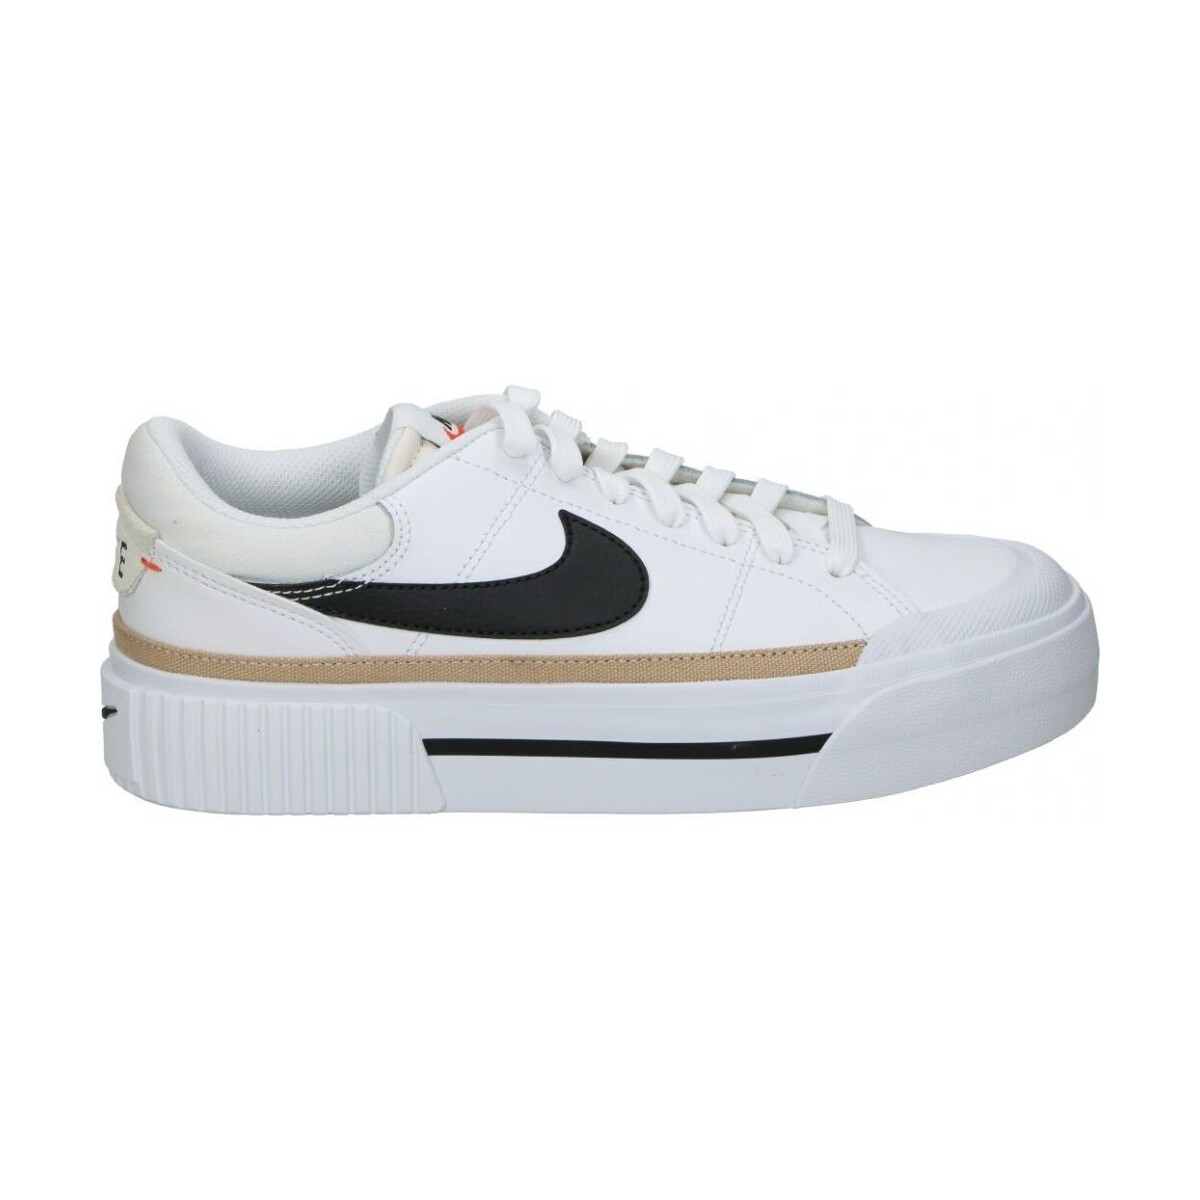 Chaussures de field Nike DM7590 100 27460996 1200 A